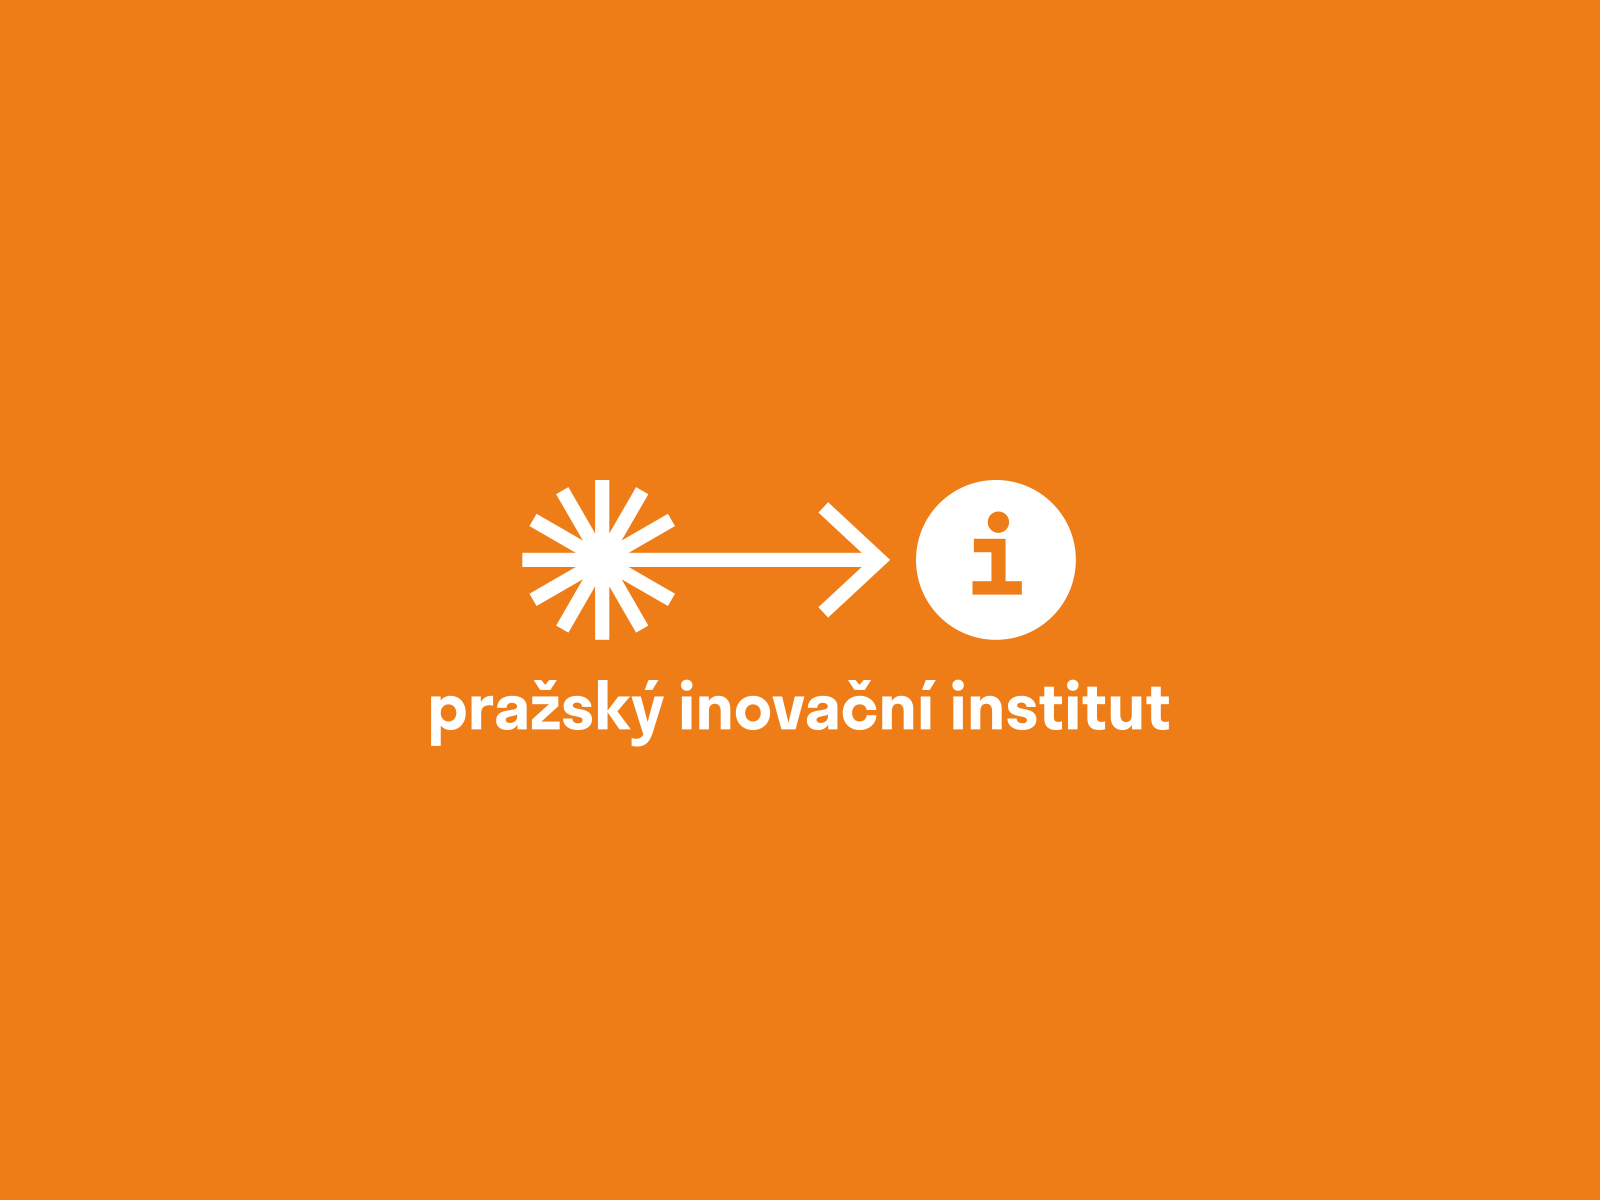 Prague Innovation Institute branding logo